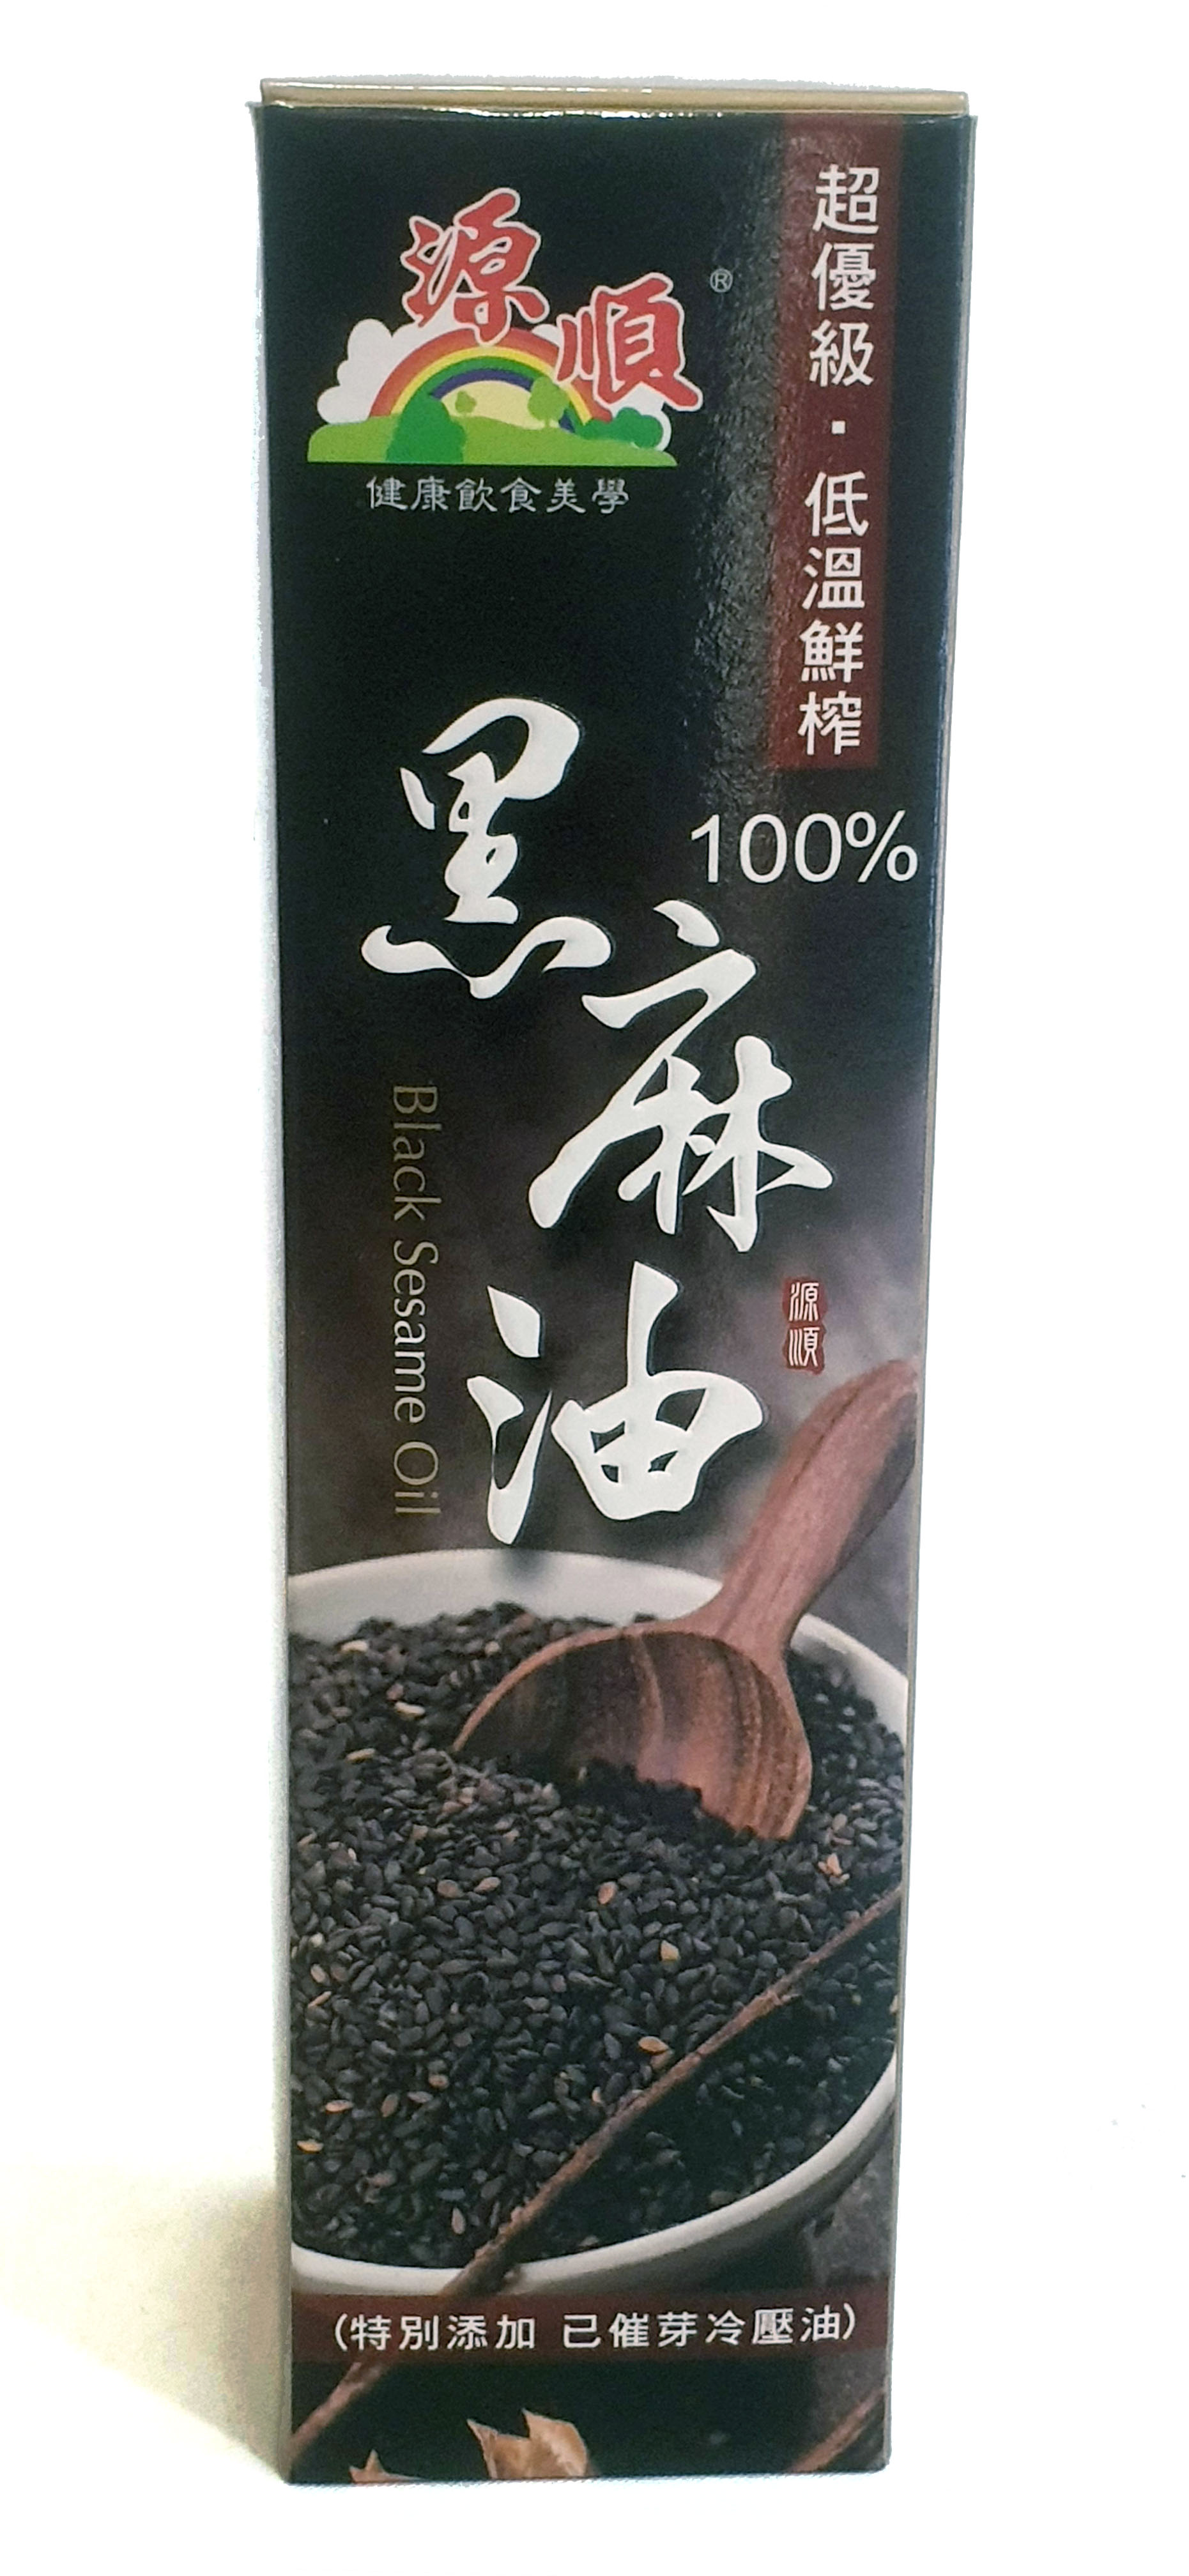 源順 超優級低溫鮮榨黑麻油 570毫升/瓶 (台灣製造)